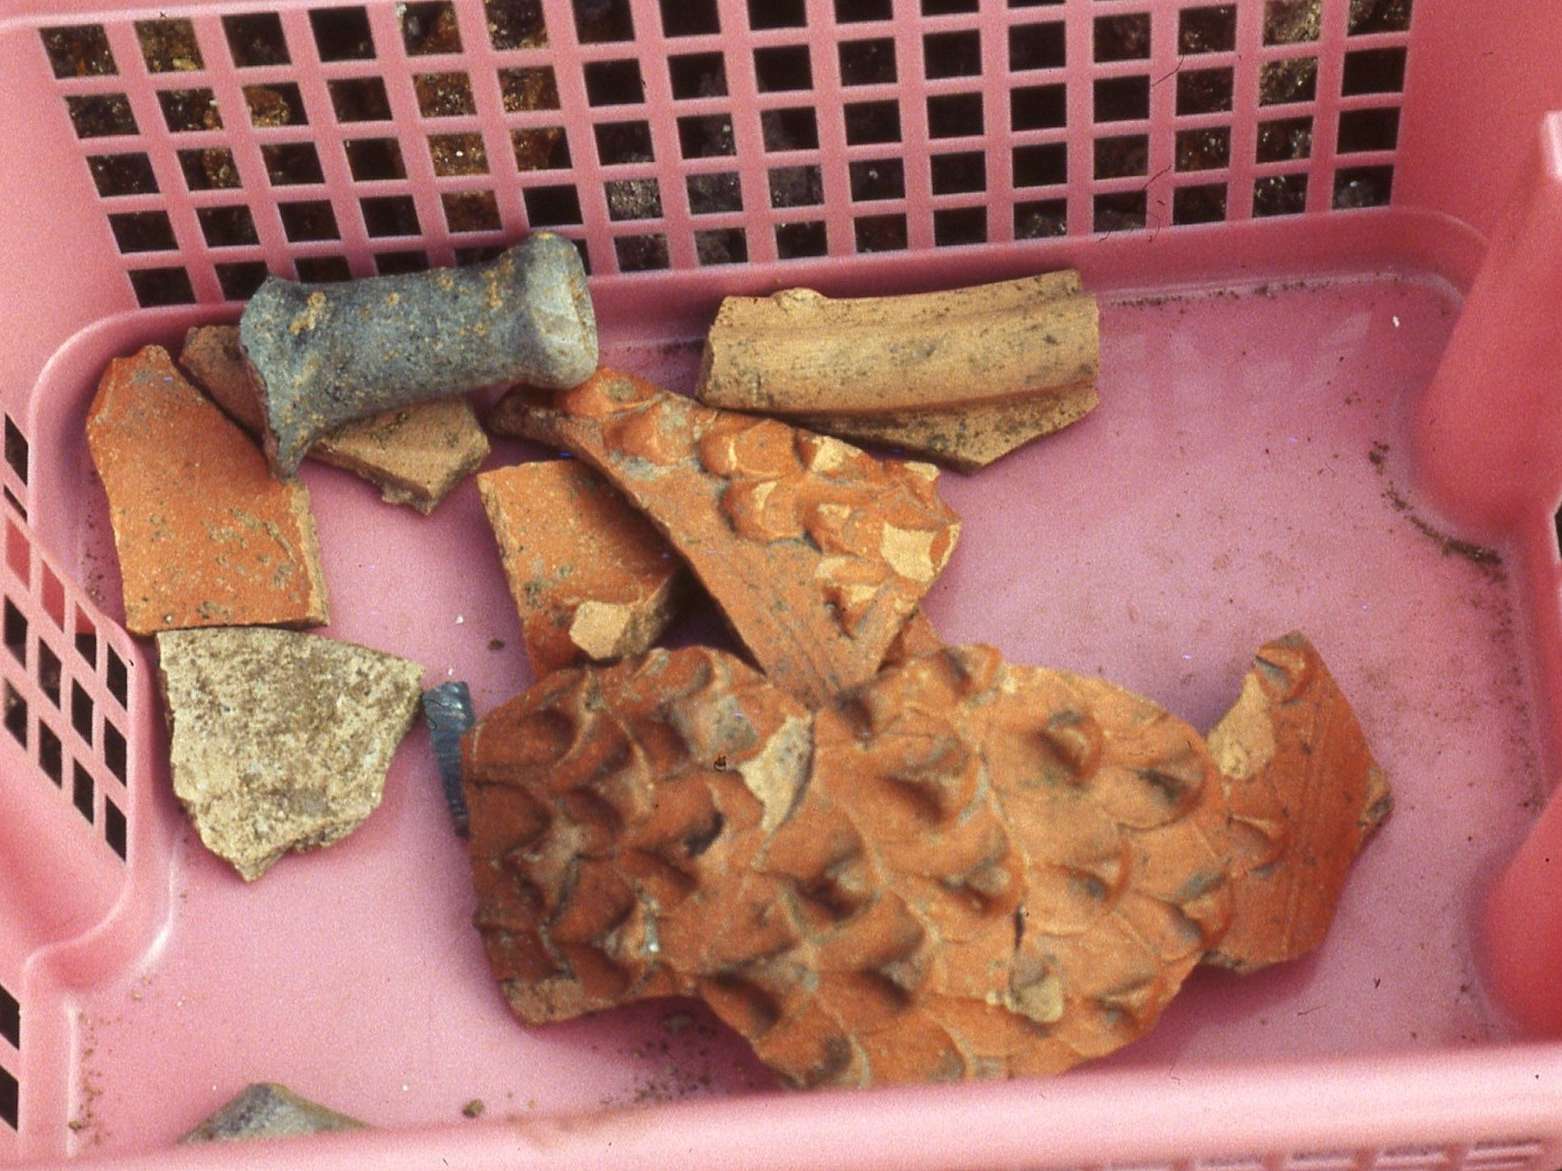  Fragmente des Keramikgefäßes mit Nuppenmuster im Bereich des heutigen Turmgassencenters 